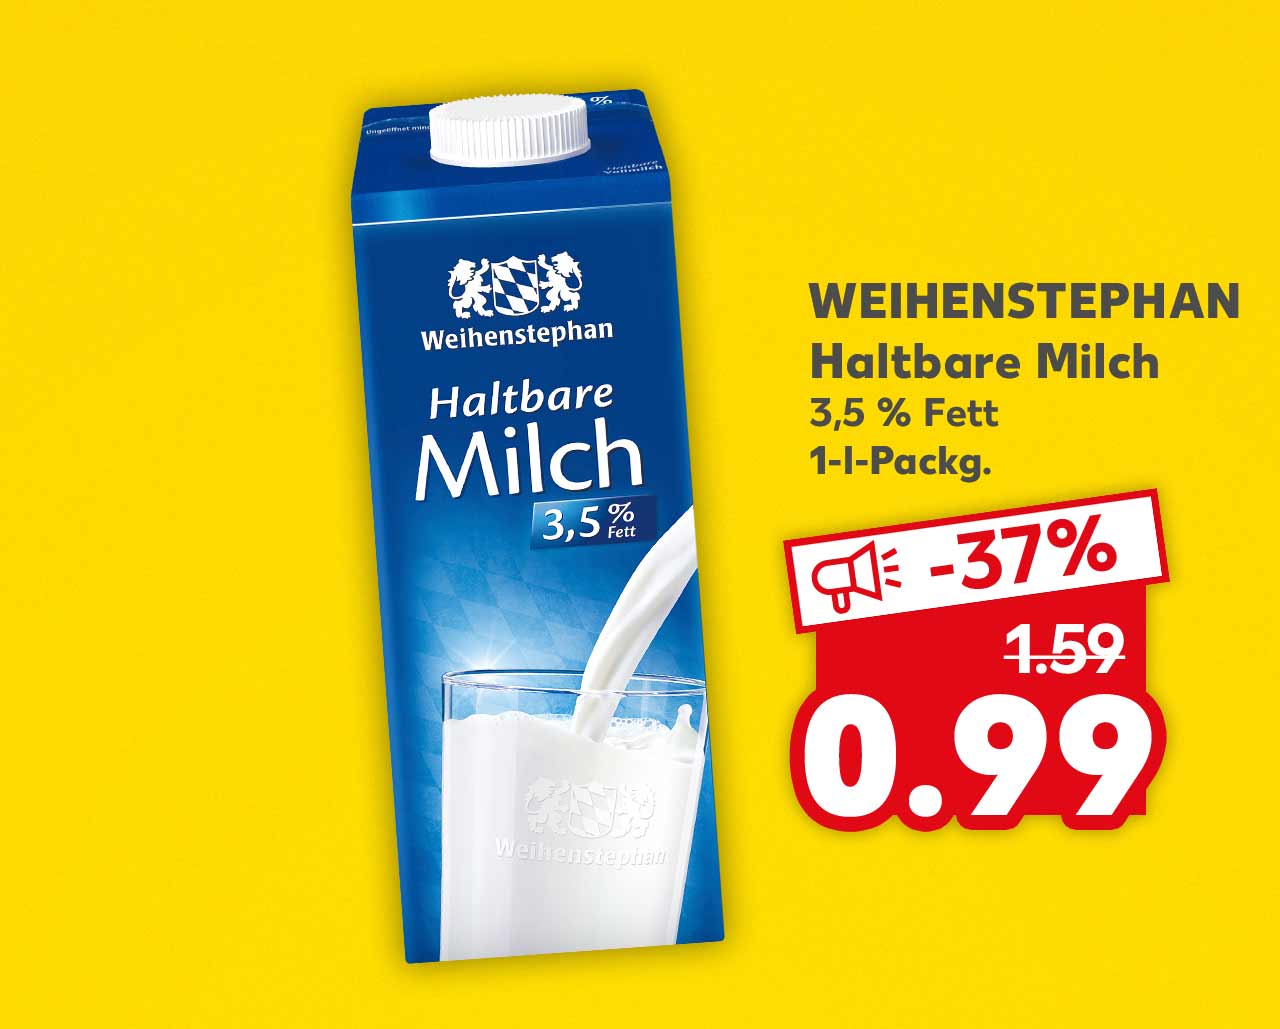 Weihenstephan Haltbare Milch, 3,5 % Fett, 1-l-Packg. für 0.99 Euro